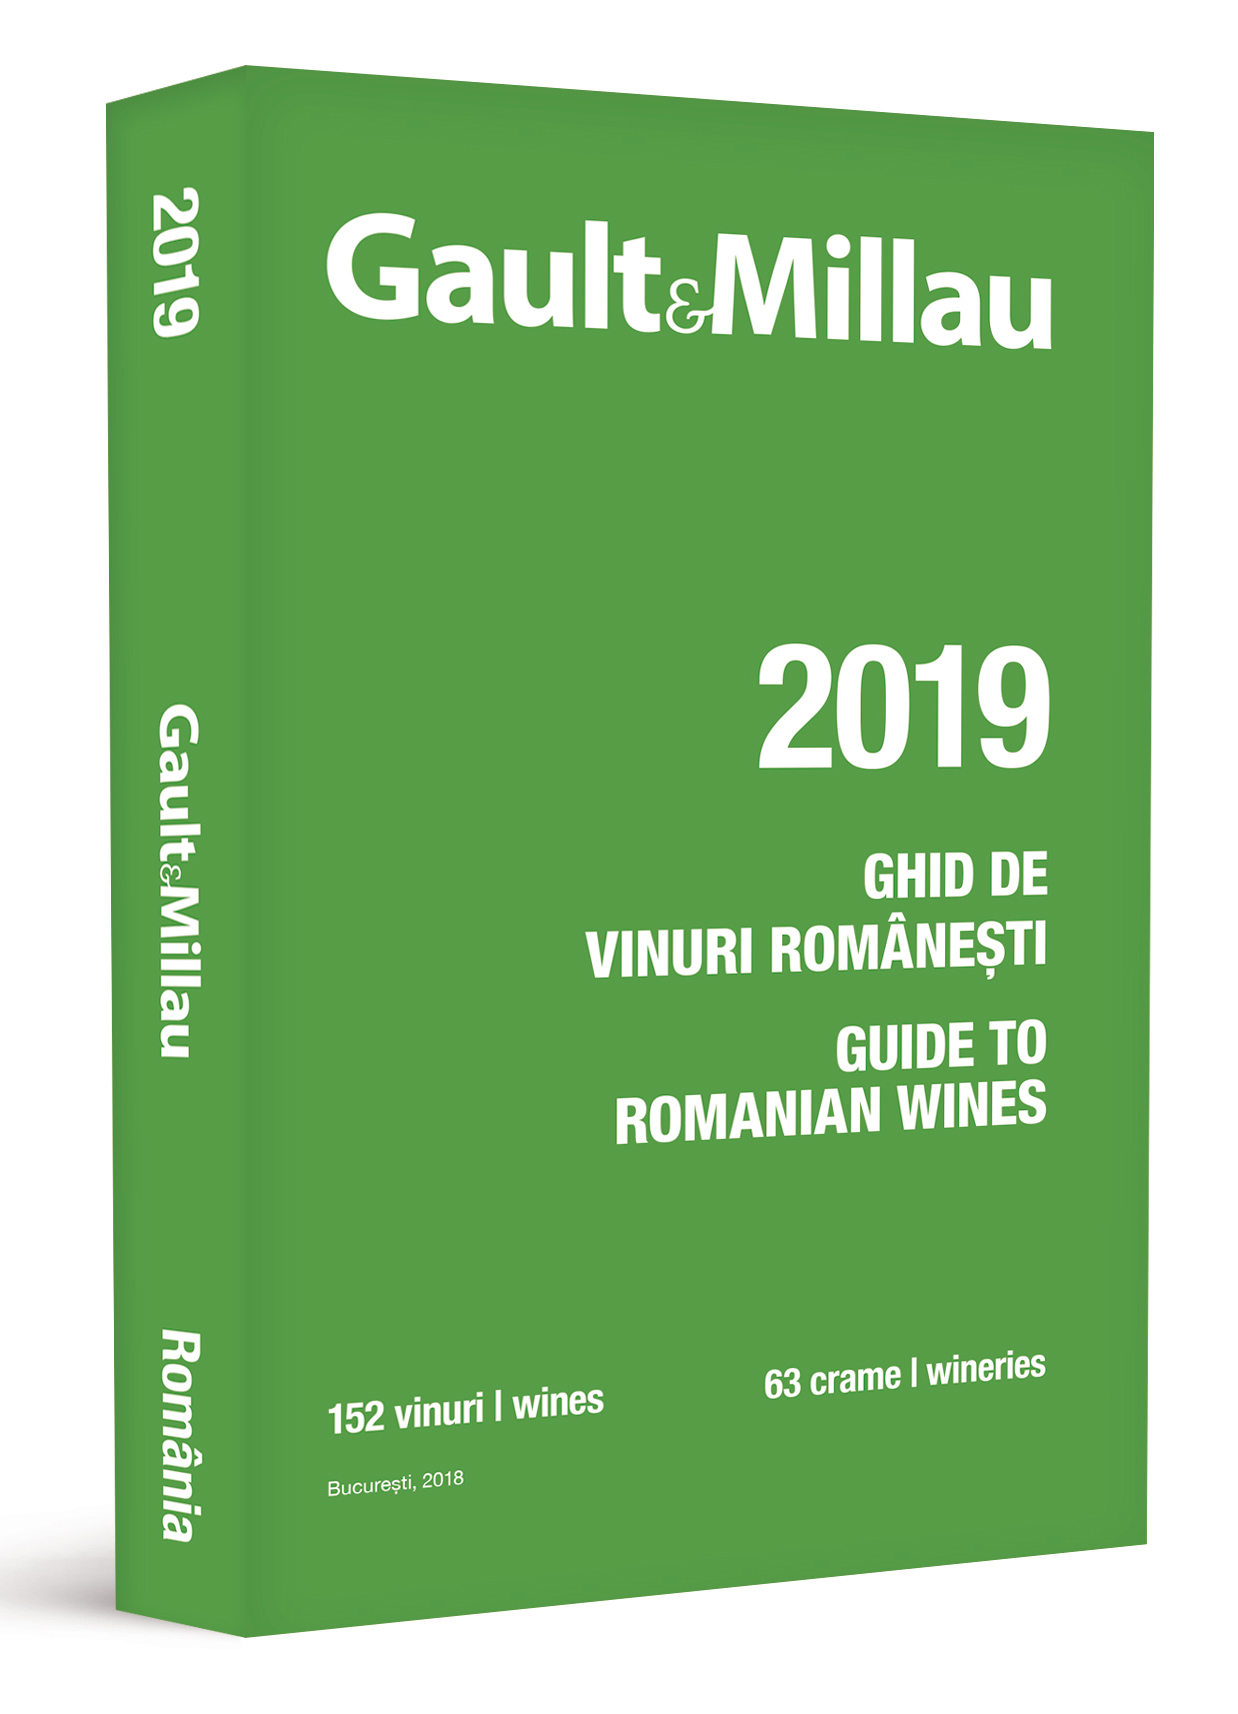 Ghidul Gault&Millau – Ghidul vinurilor romanesti 2019 | carturesti.ro imagine 2022 cartile.ro